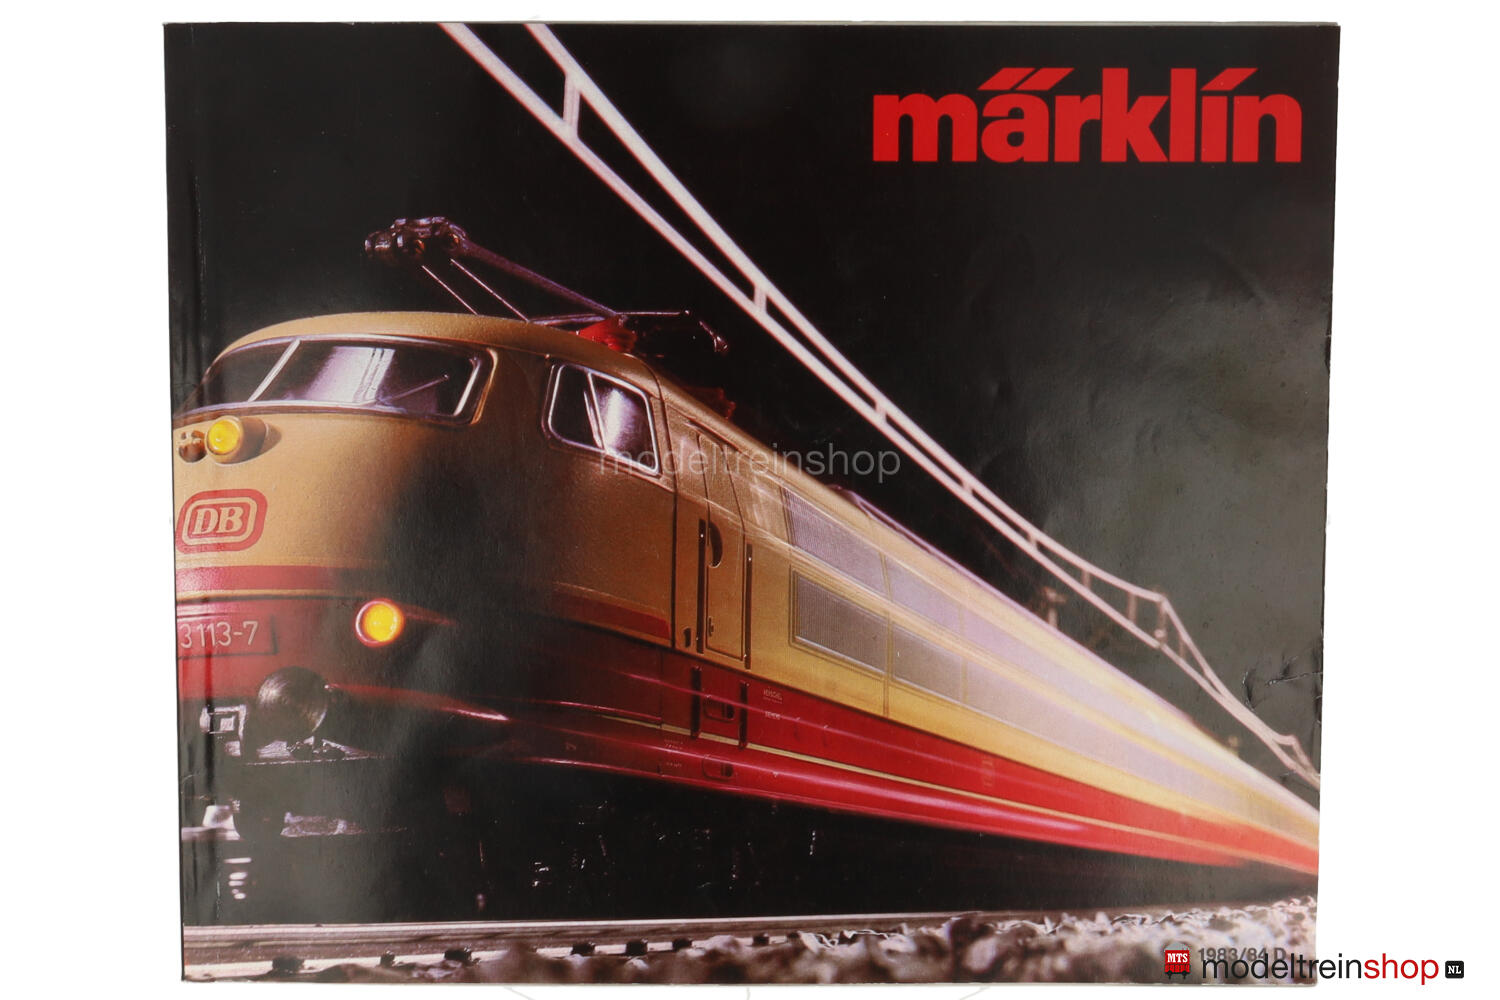 Marklin Catalogus 1983/84 - Duitse Uitgave met prijslijst - Modeltreinshop